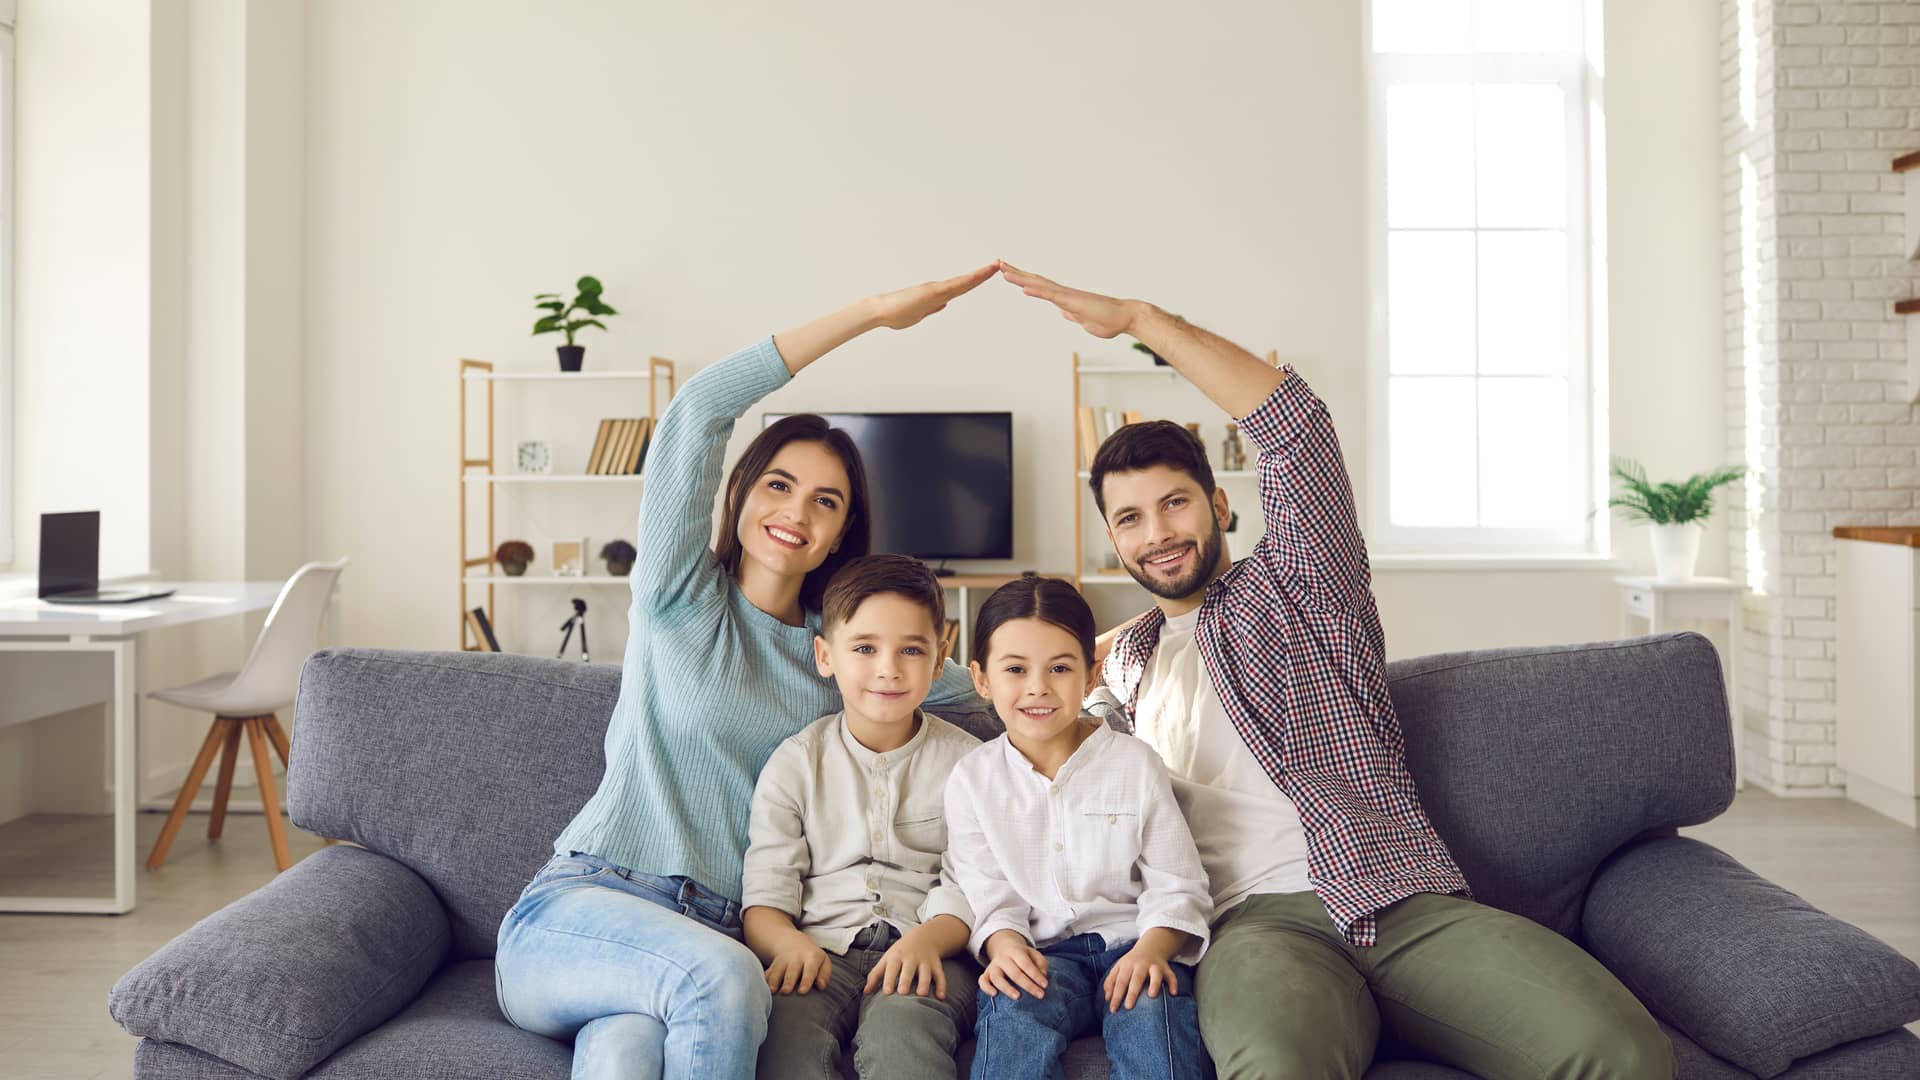 familia en el sofa de su casa protegiendose con los brazos que representa el seguro de hogar de reale seguros